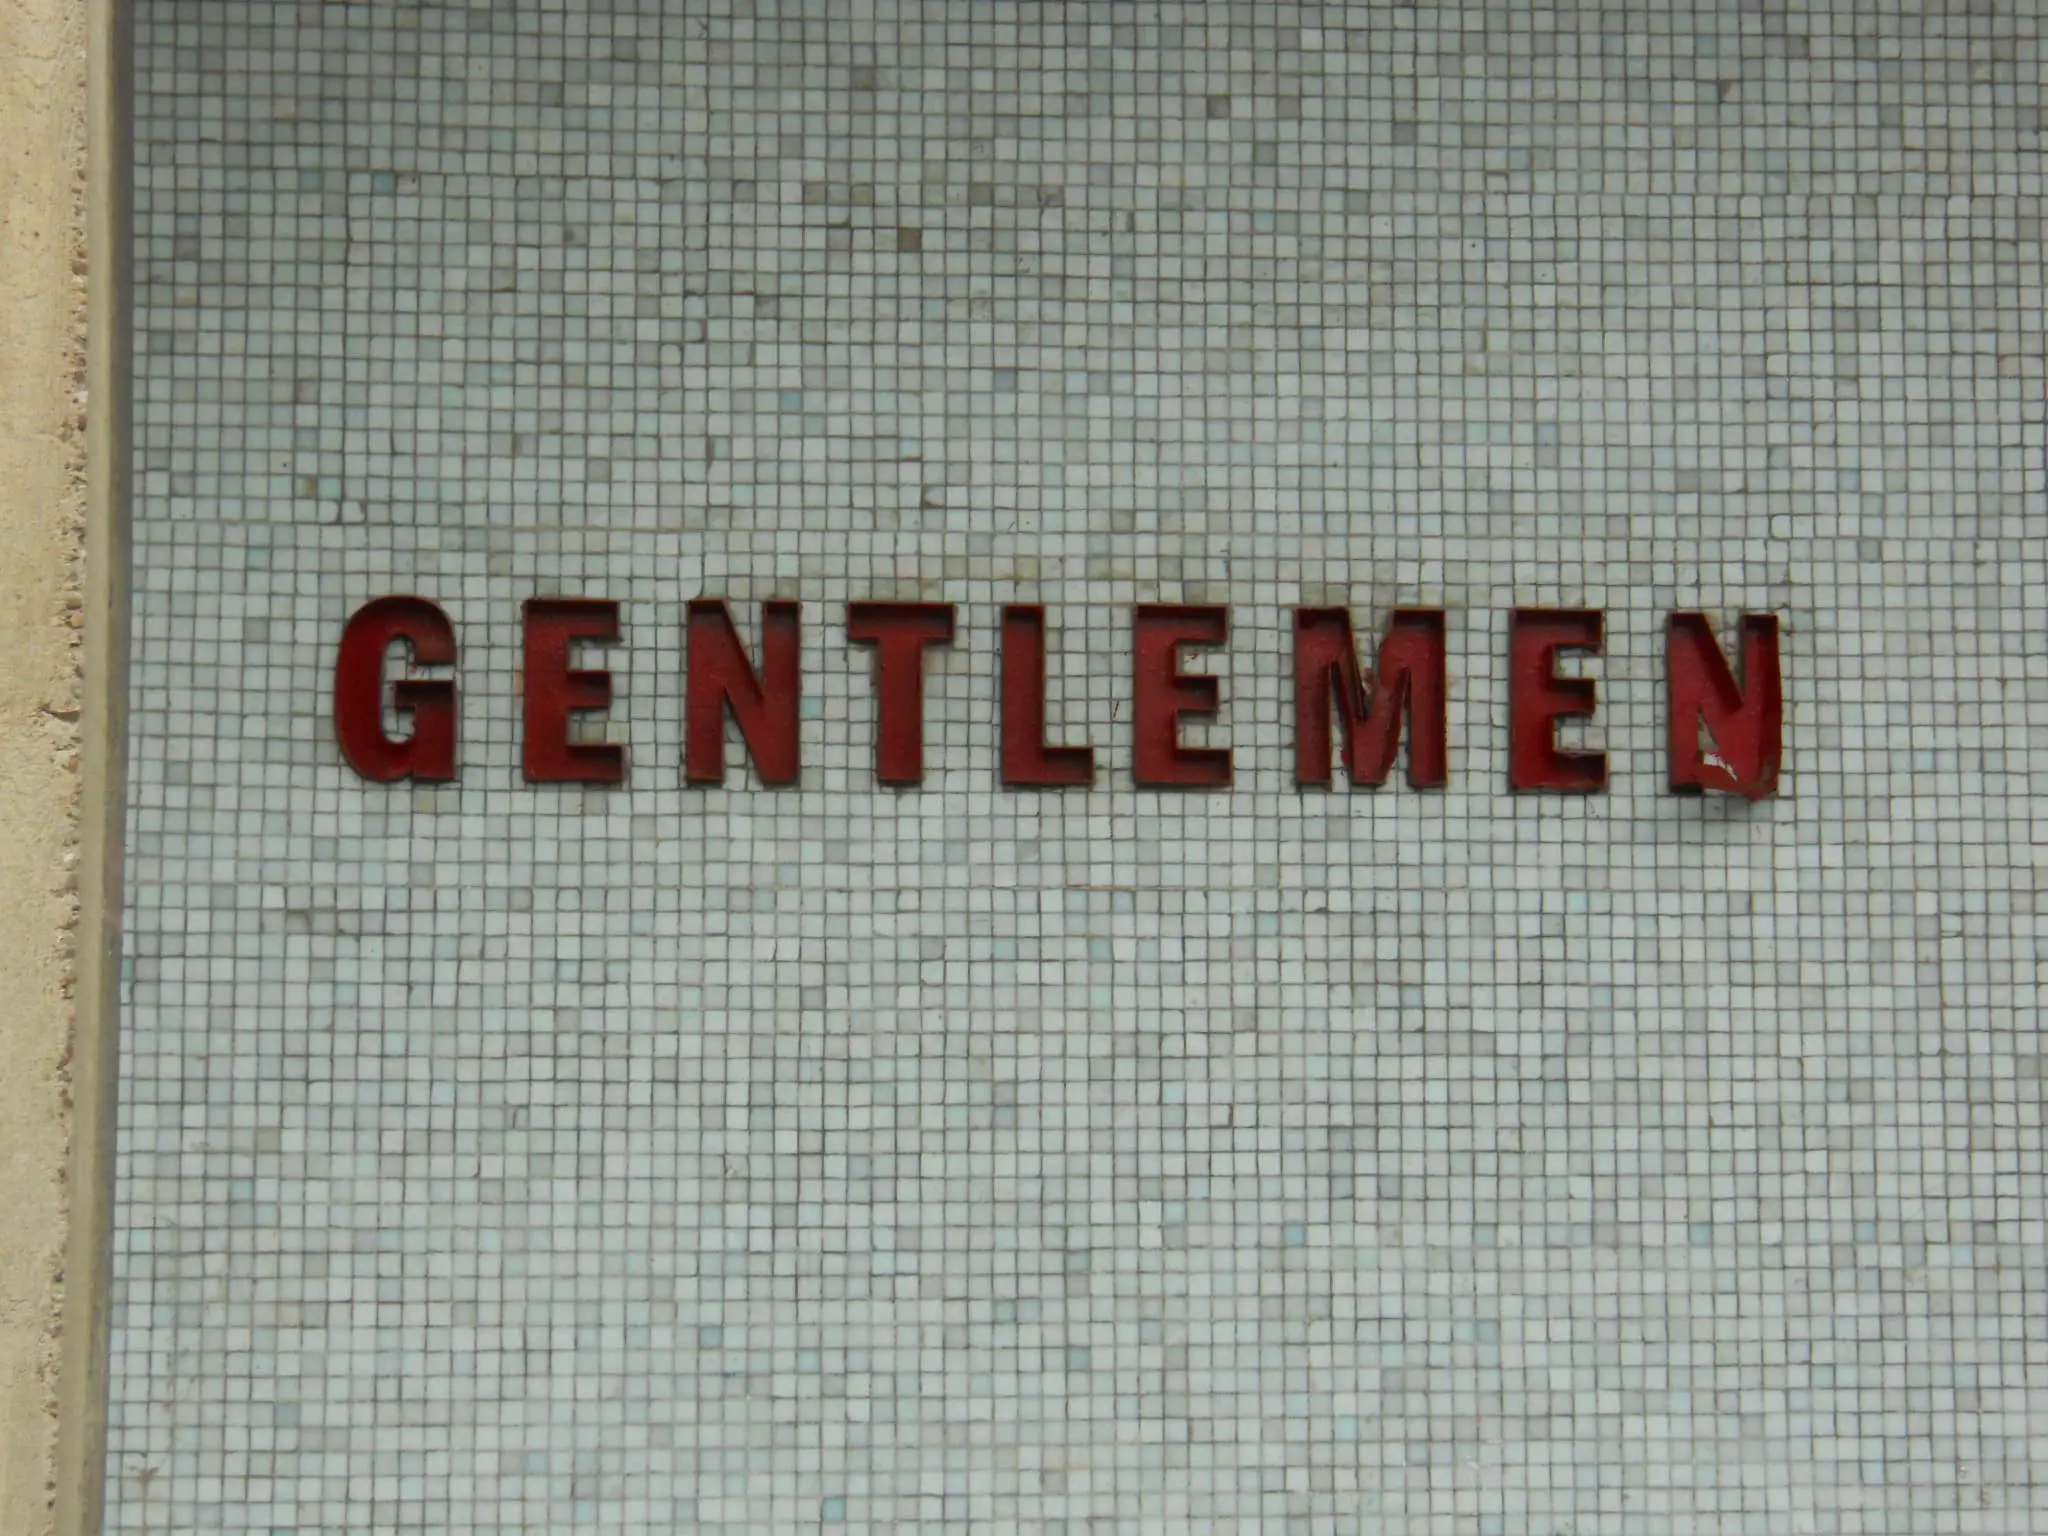 Gentlemen toilets sign